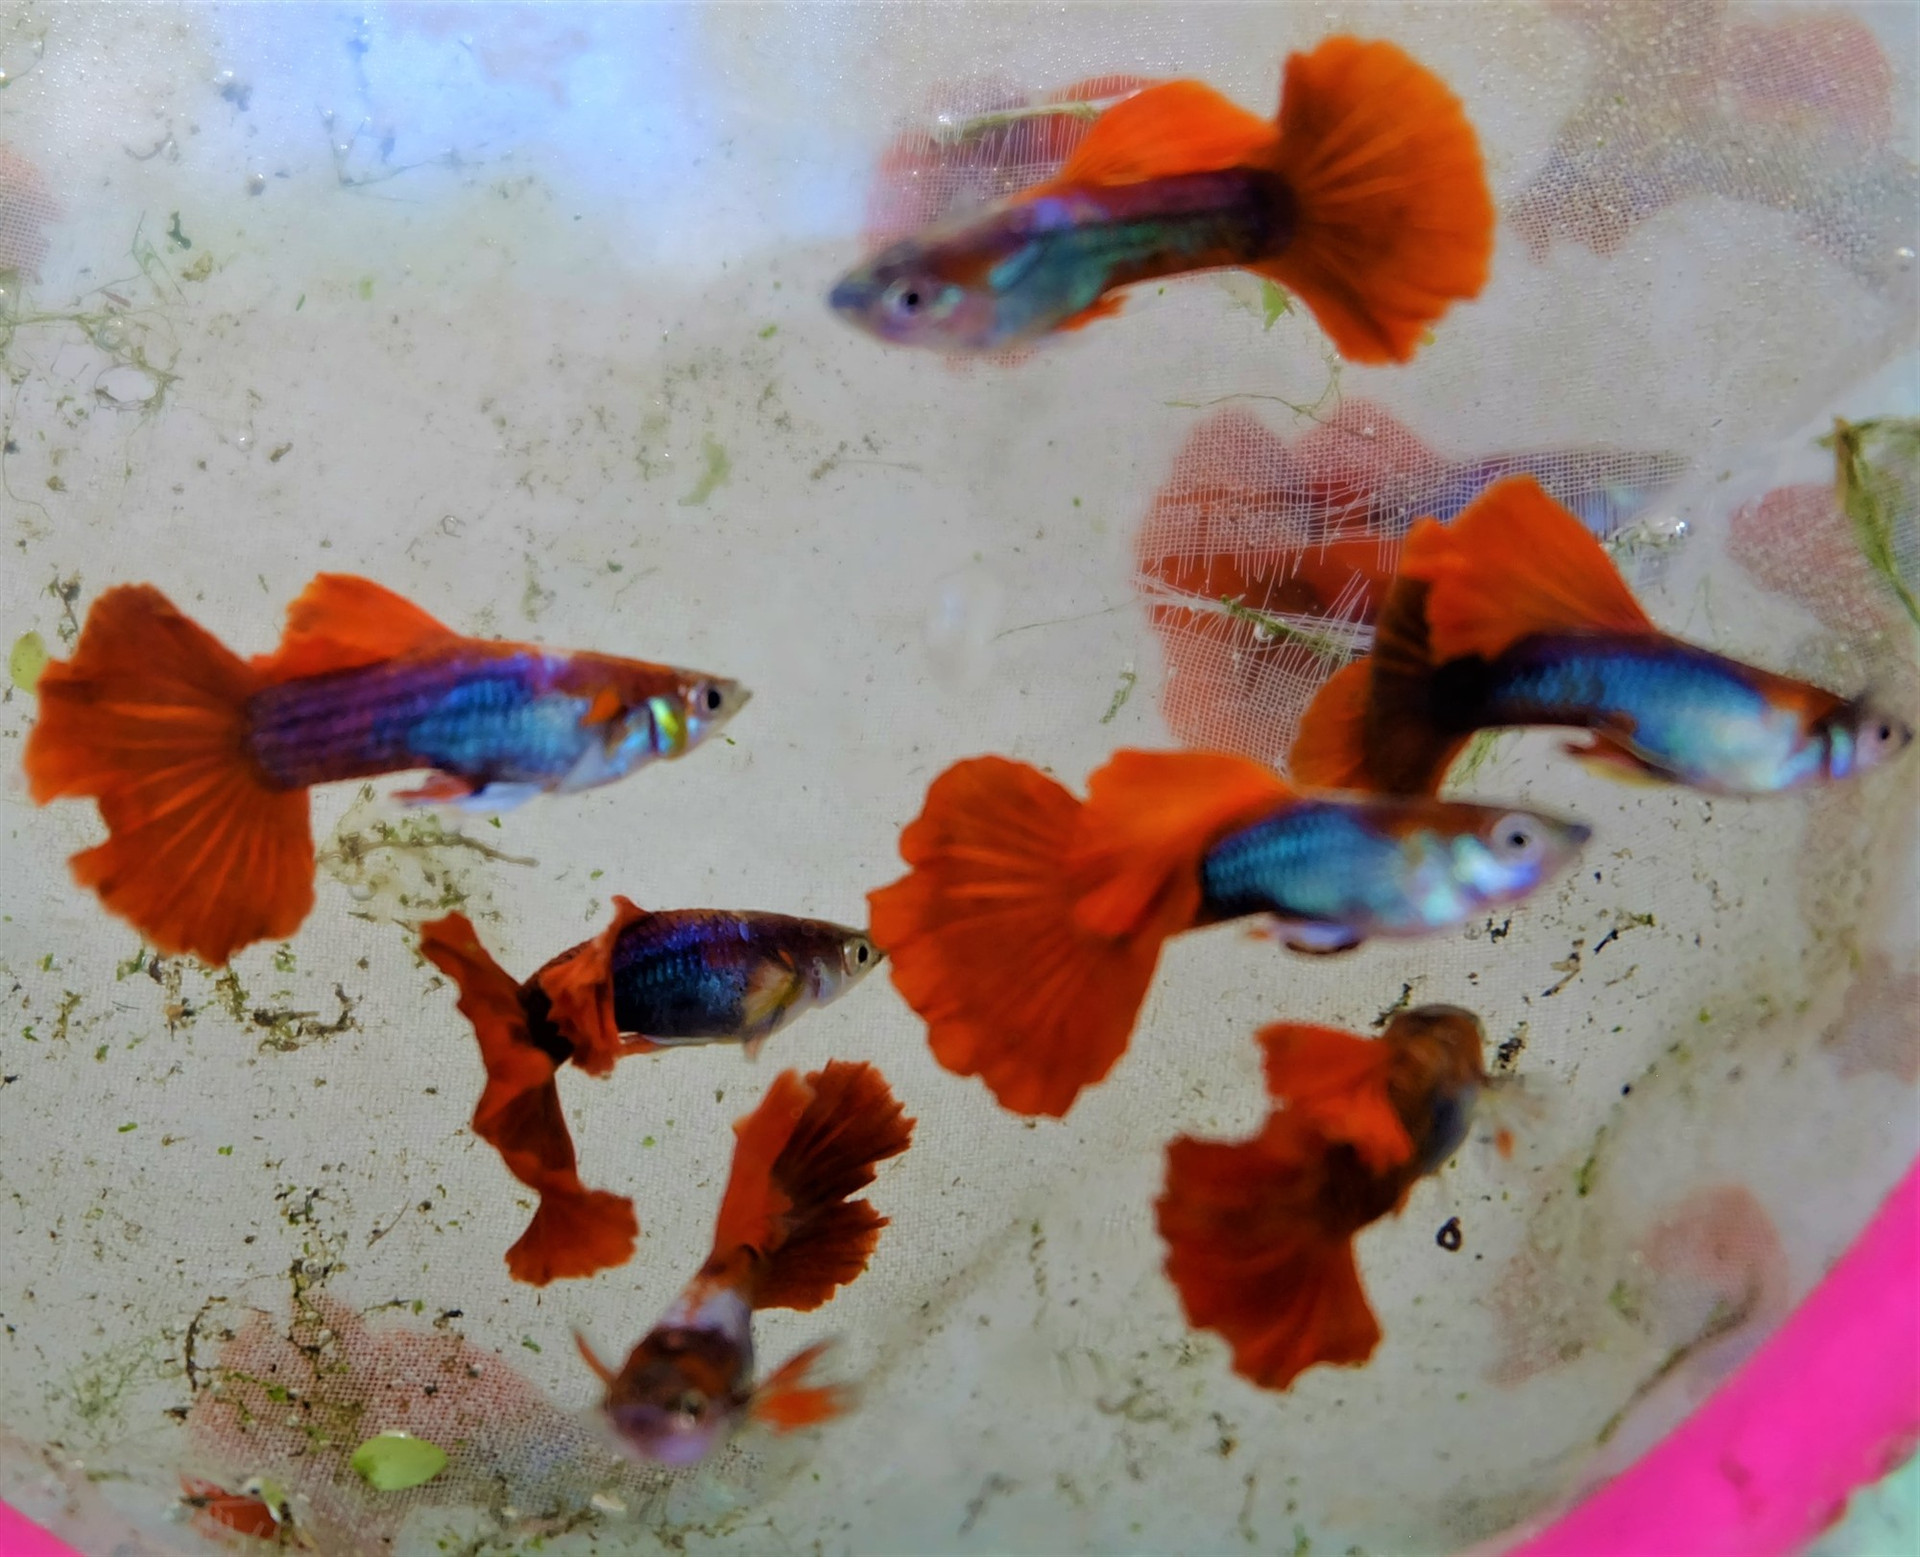 Màu sắc rực rỡ là điểm nổi bật của dòng cá bảy màu. Trong hình là cá bảy màu Dumbo redtail. Ảnh: M.L